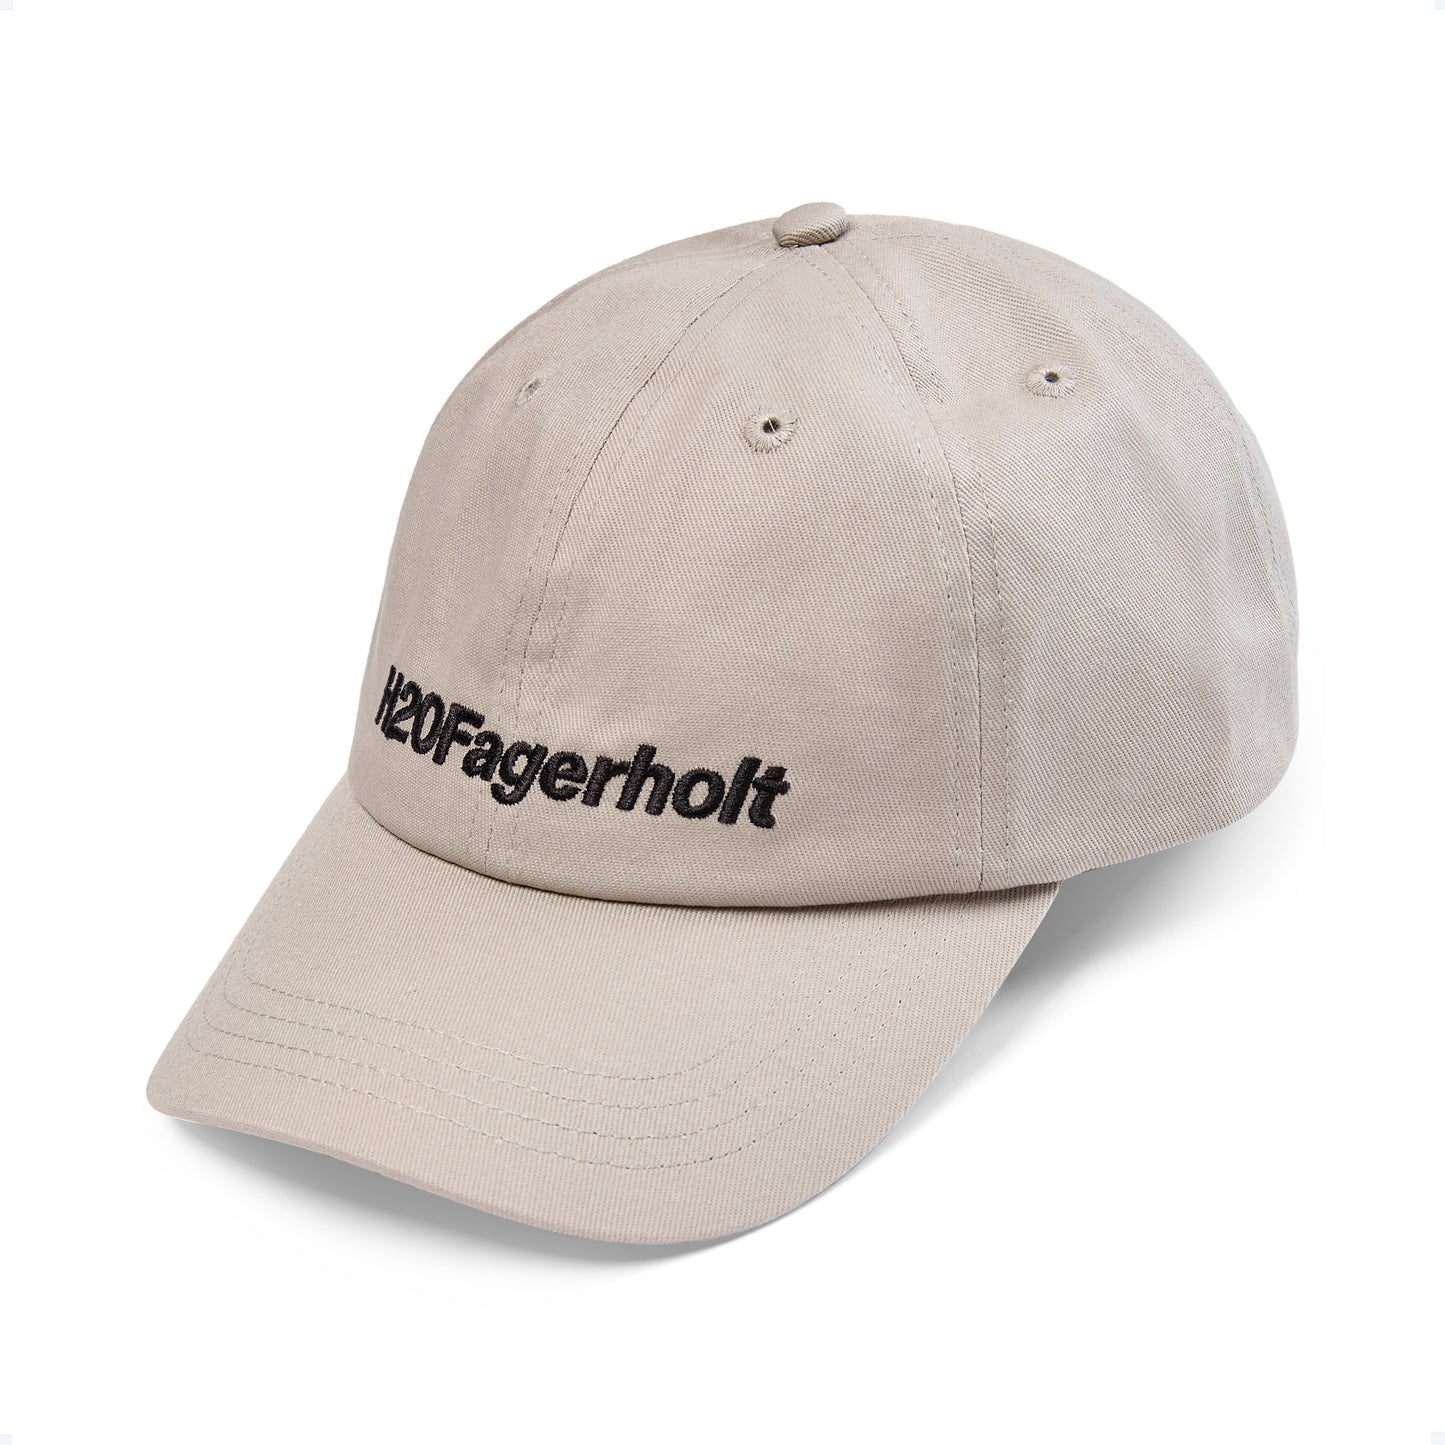 H2OFagerholt Cap